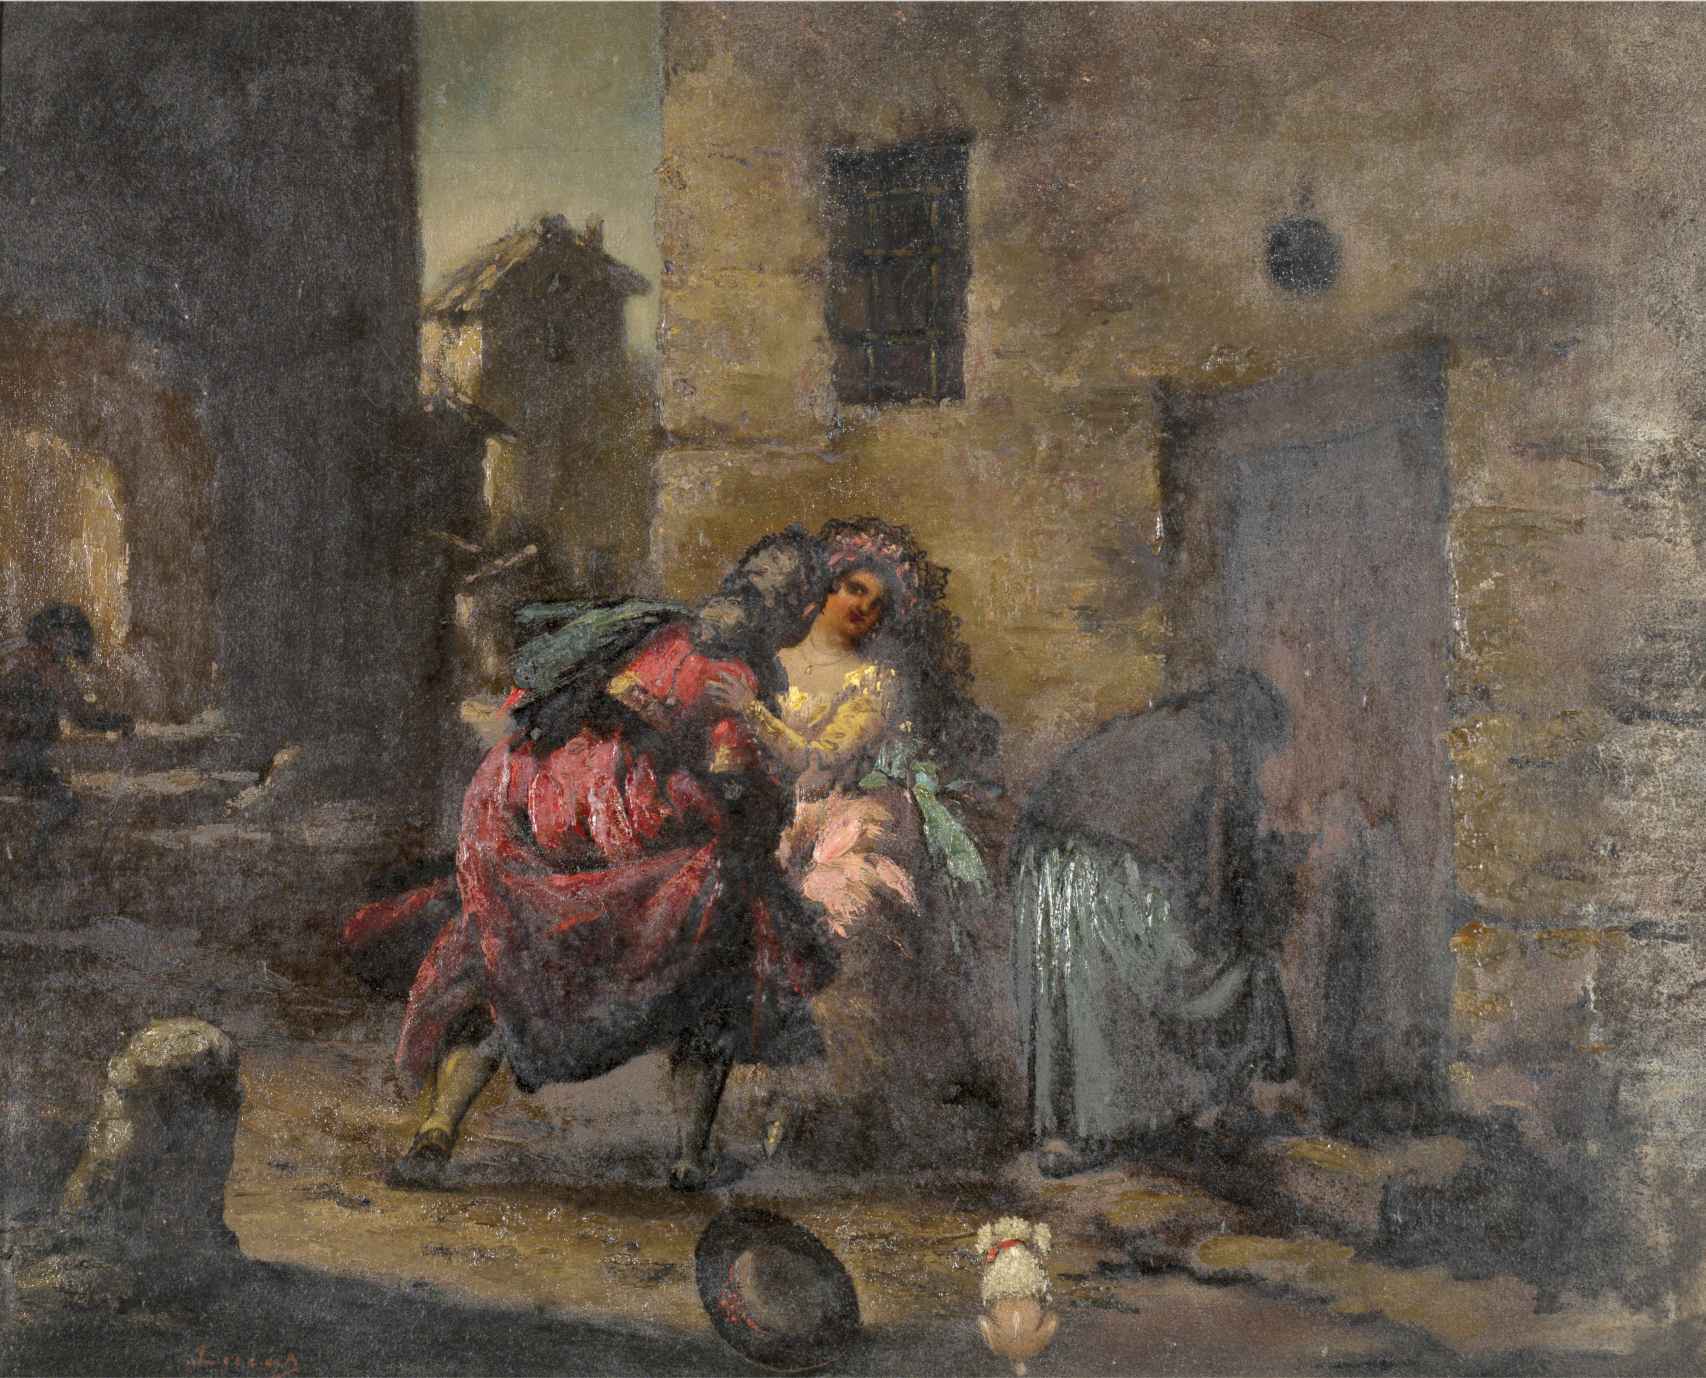 'Escena de majos y celestina'. Atribuido a Eugenio Lucas Villaamil. Museo Nacional del Prado. Procedencia: Pedro Rico